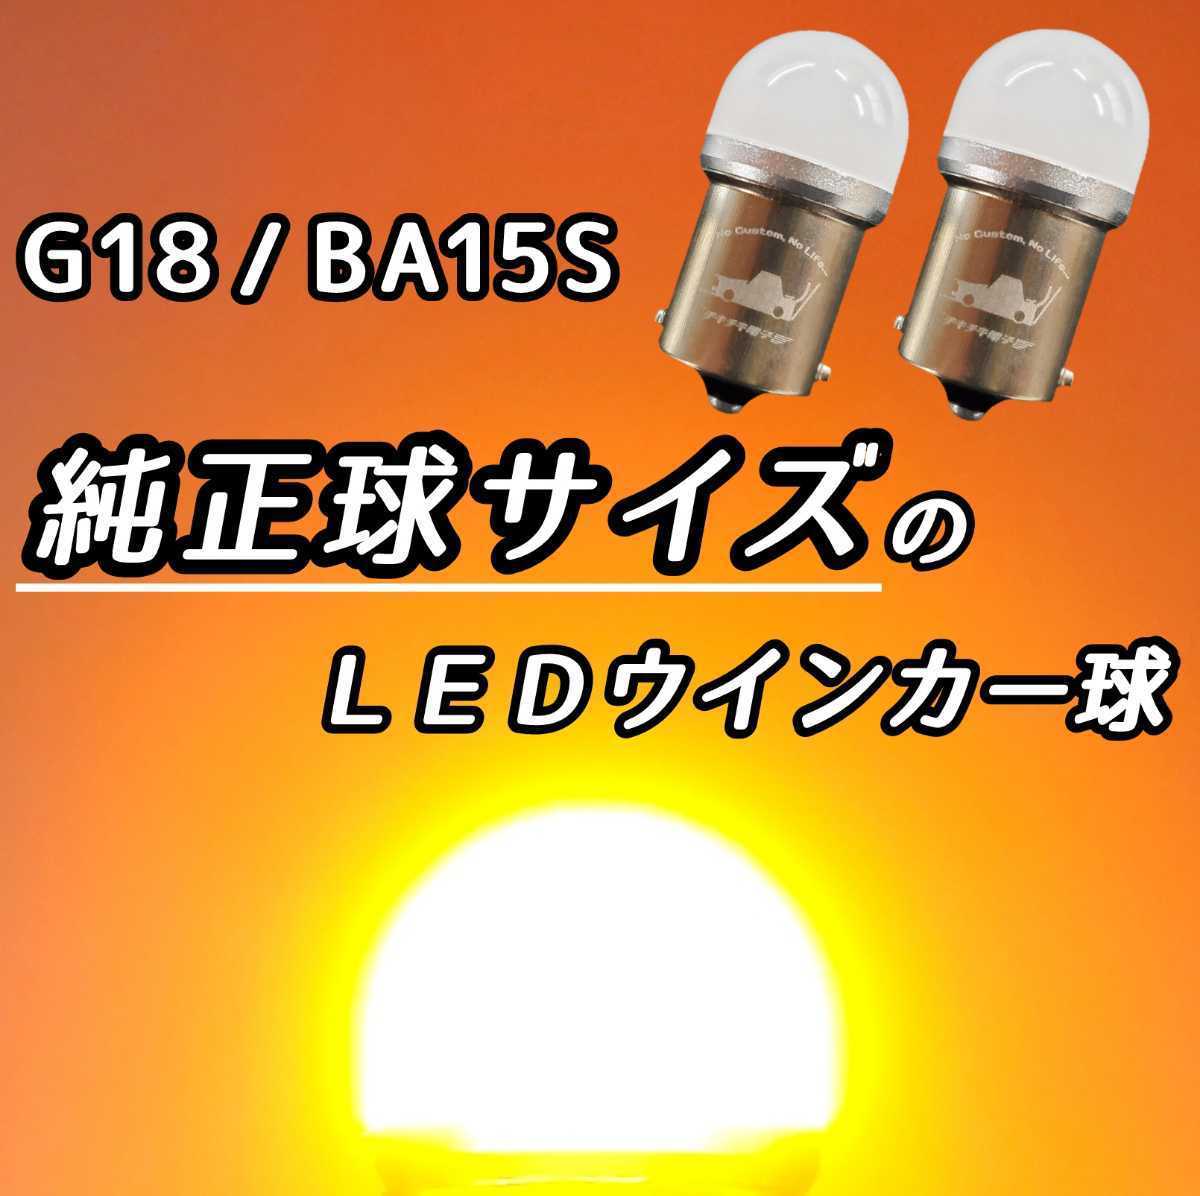 【純正電球と同じサイズ】2個set LEDウインカー LEDウィンカー LED電球 シングル球 BA15S G18 ステルス 180°平行 小さい 小型 短い ミニの画像1